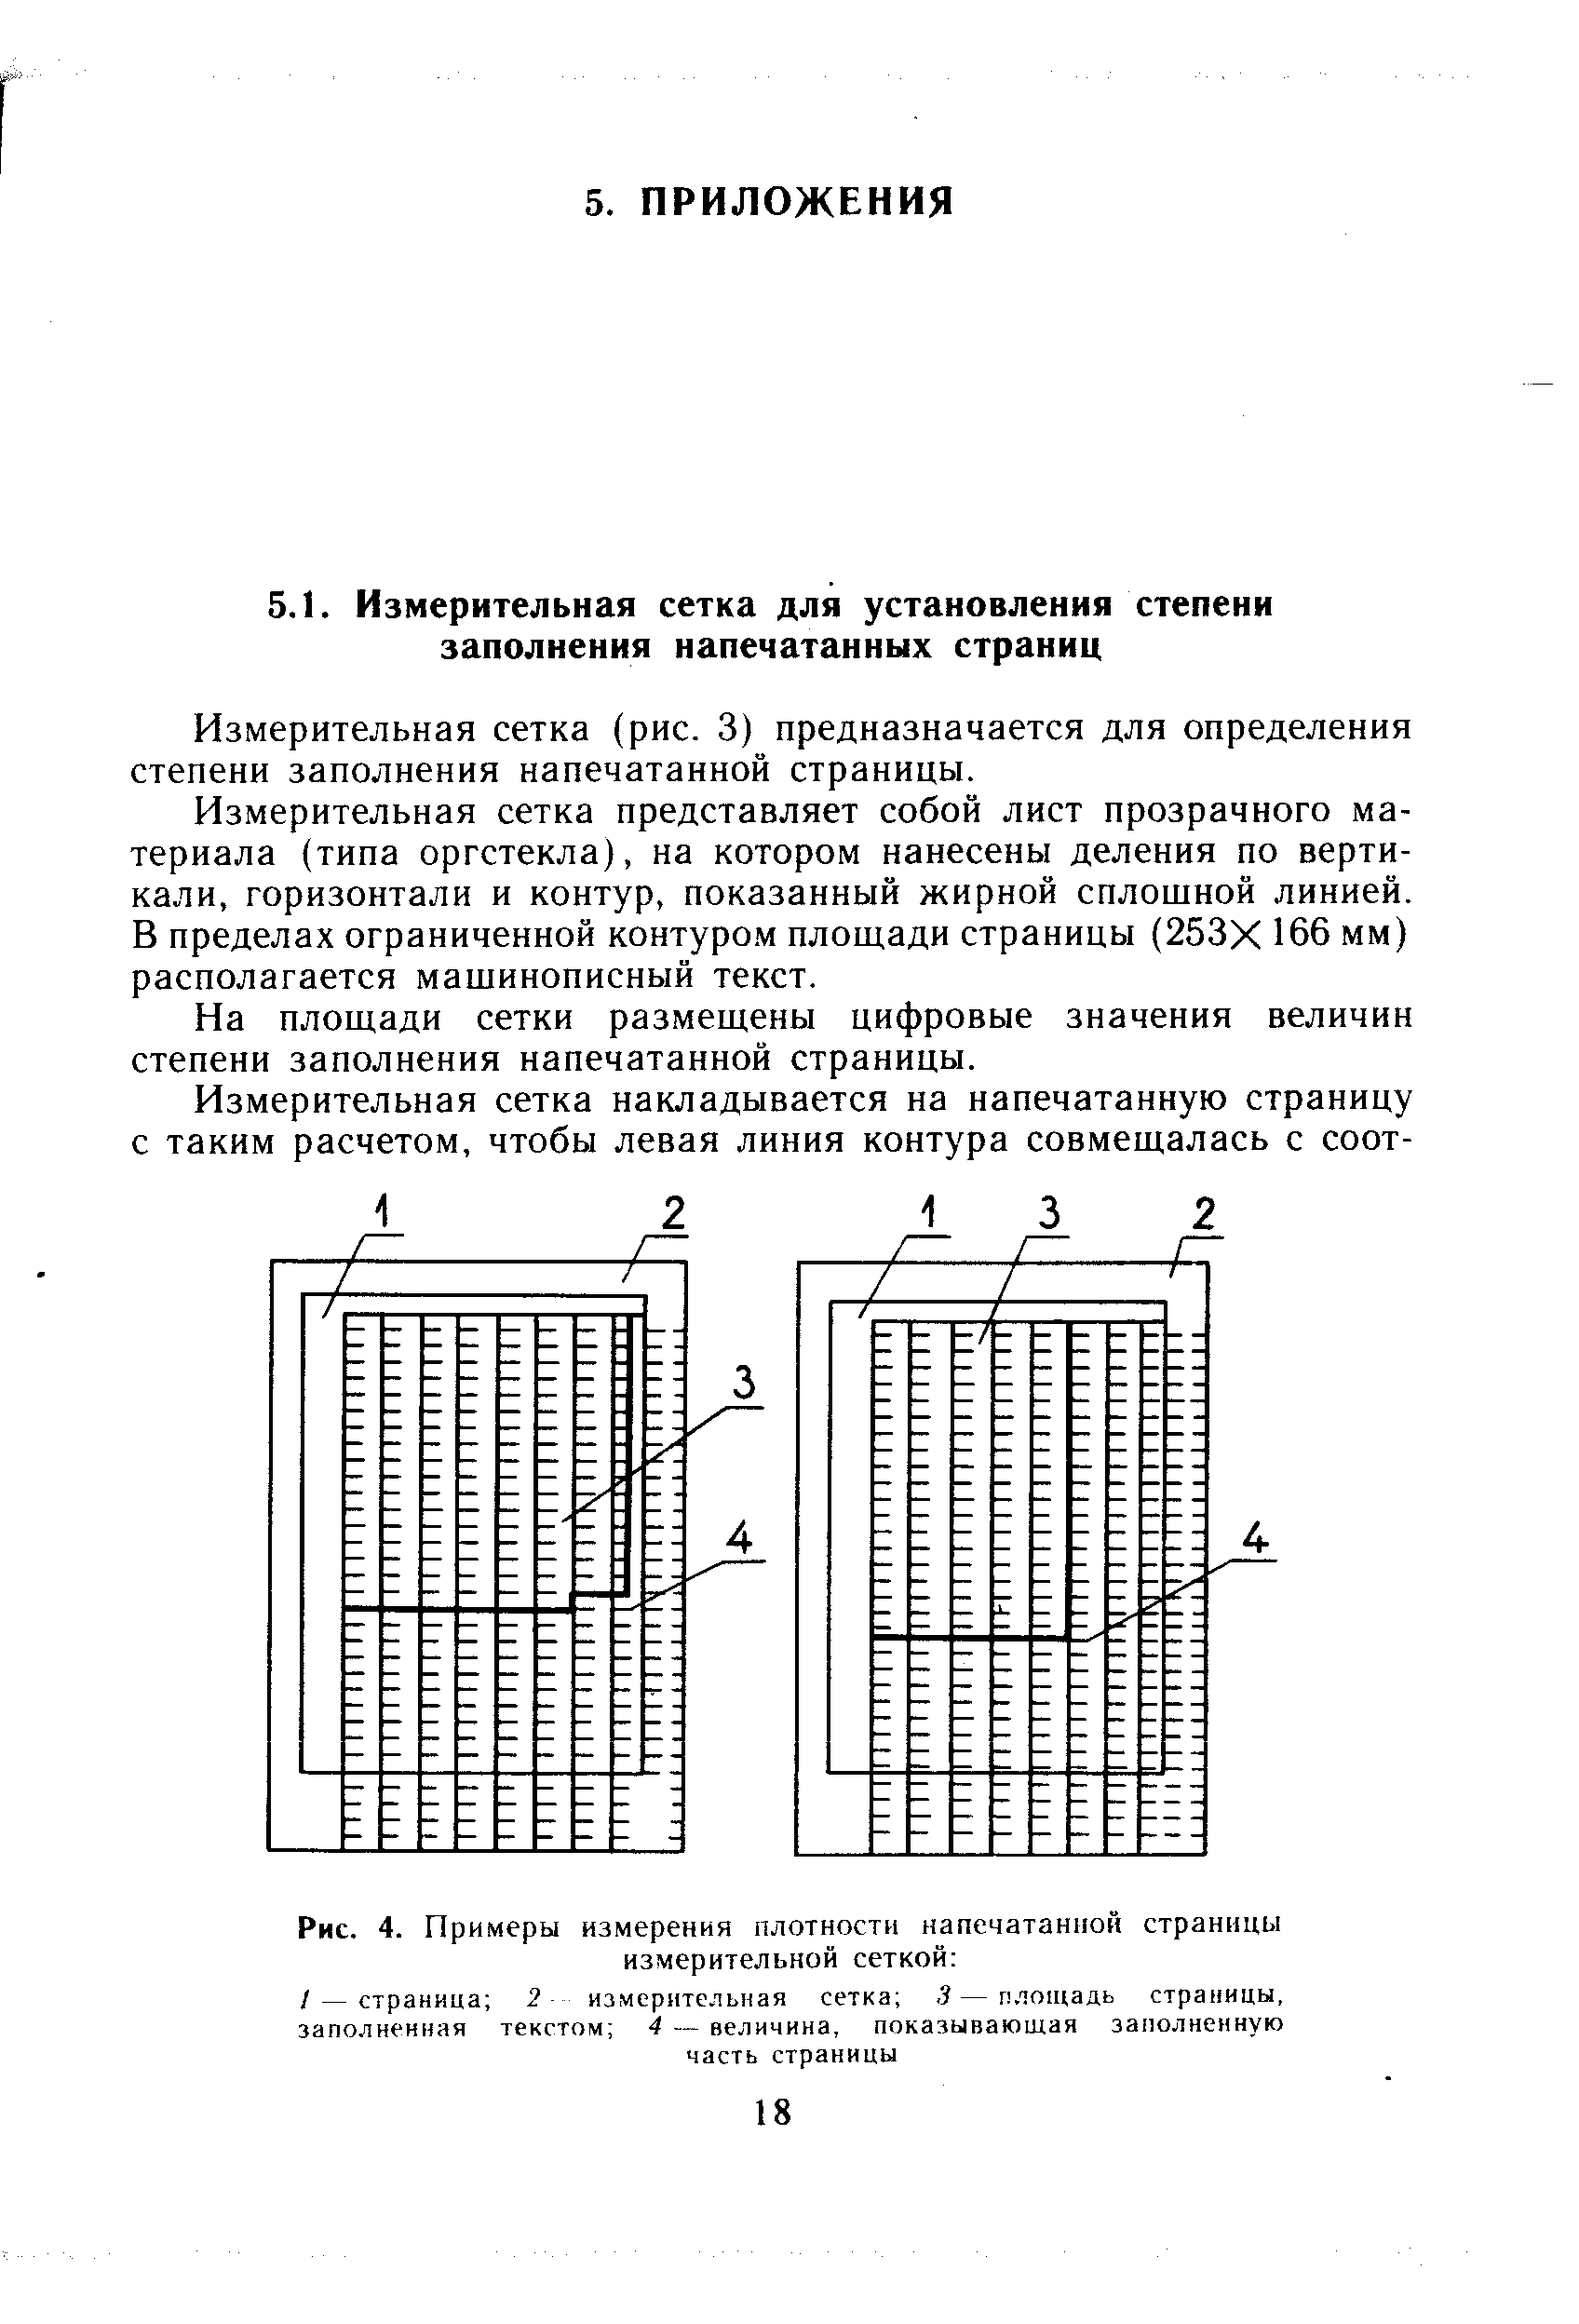 Рис. 4. Примеры измерения плотности напечатанной страницы
